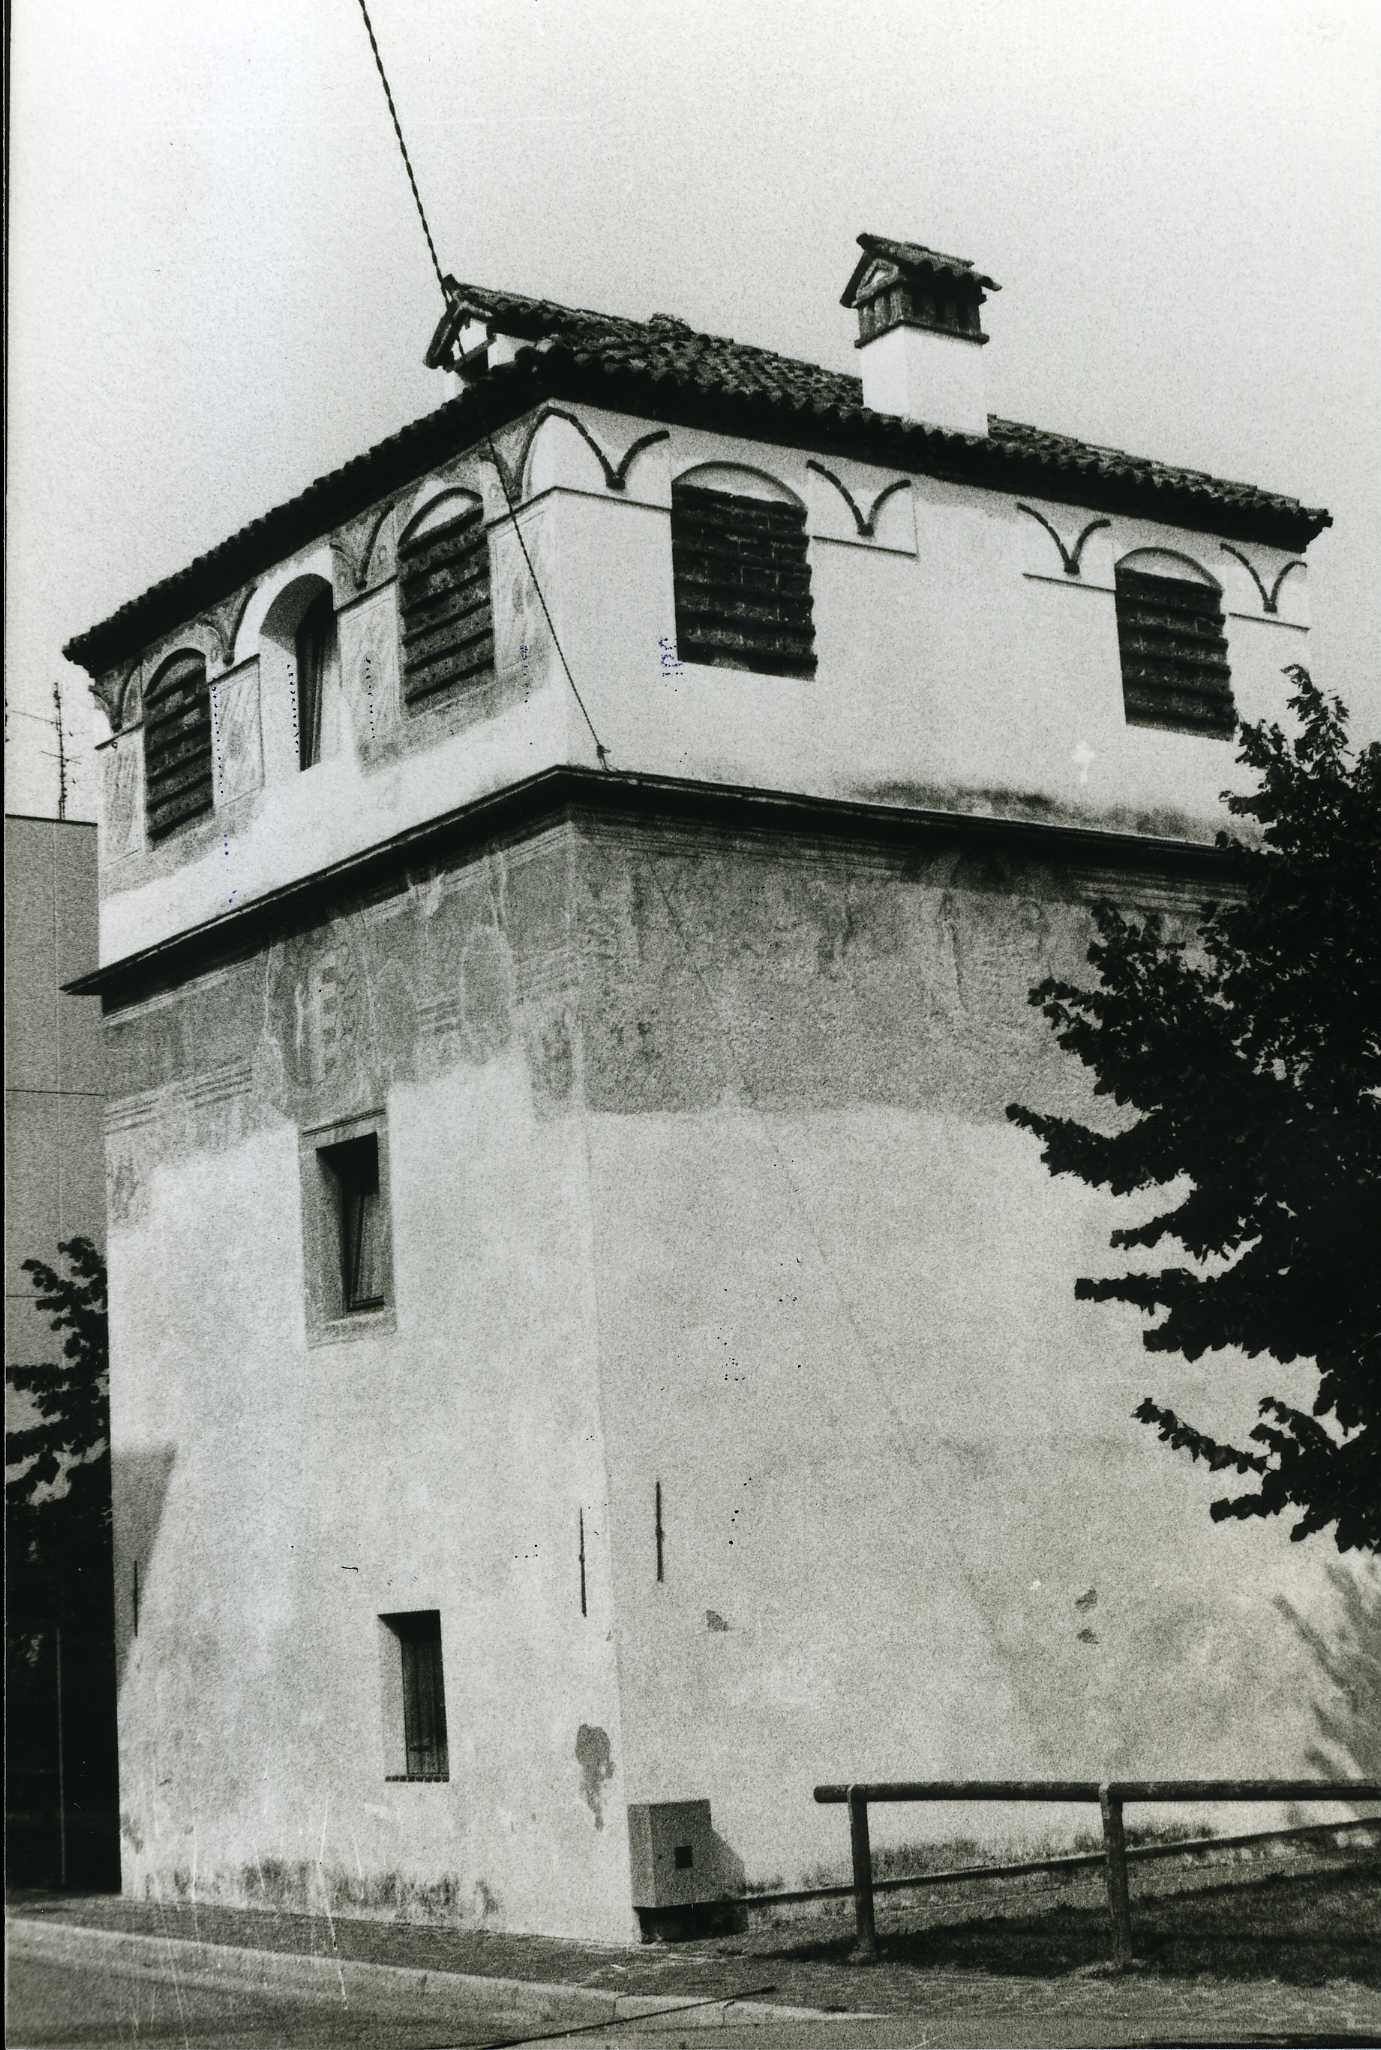 Torre Pagello-Monza (torre, colombara) - Breganze (VI)  (XV)